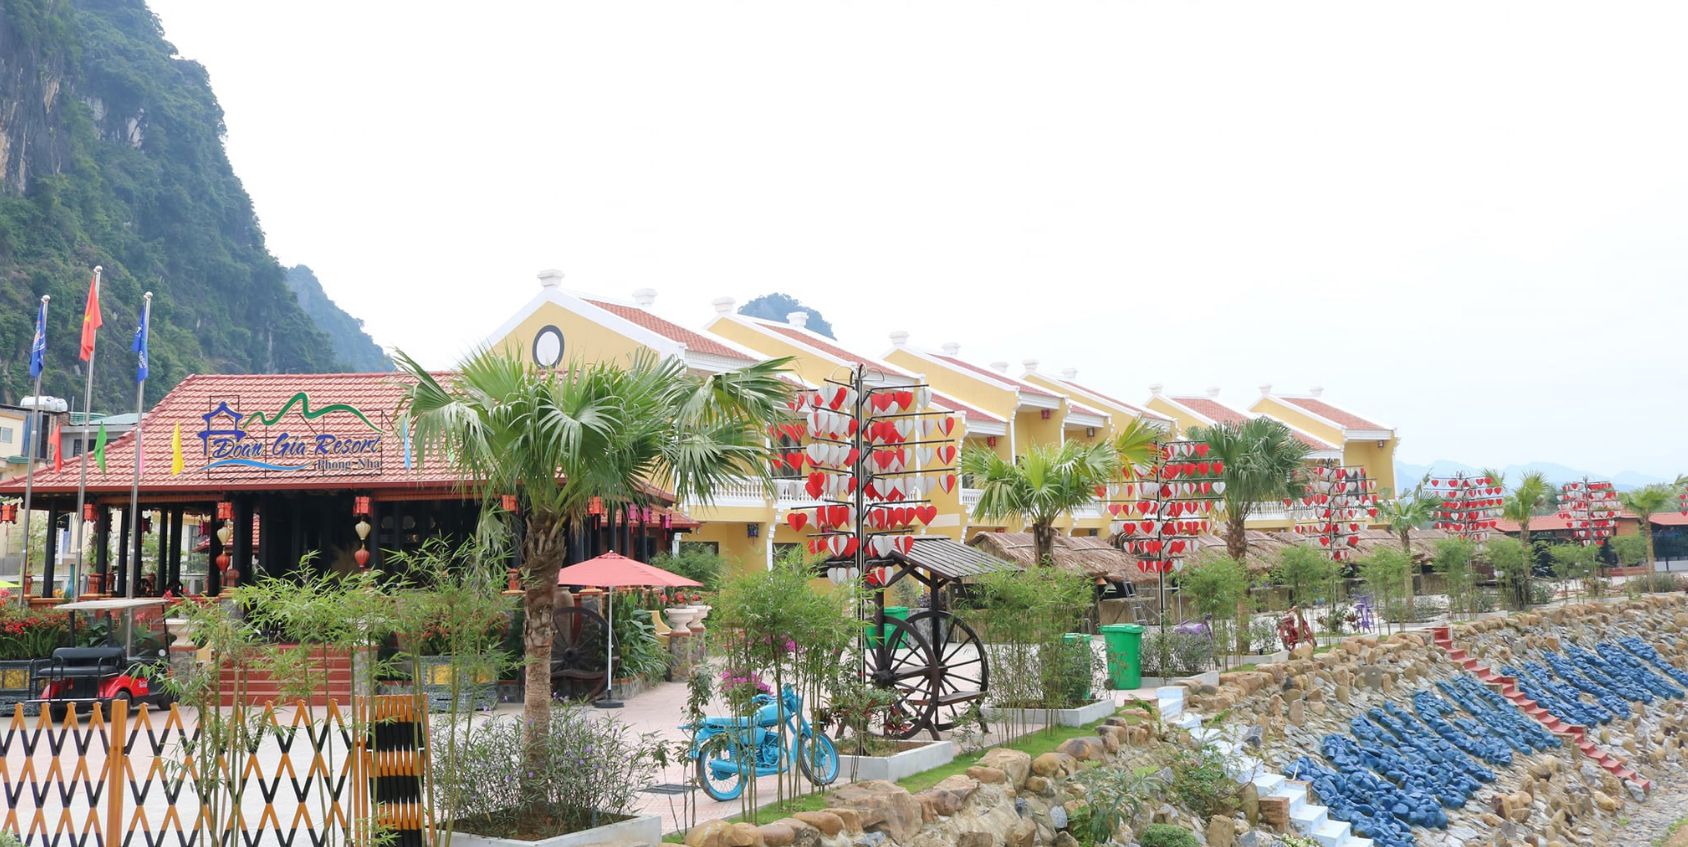 Đoàn Gia Resort: Điểm dừng chân lý tưởng cho du khách